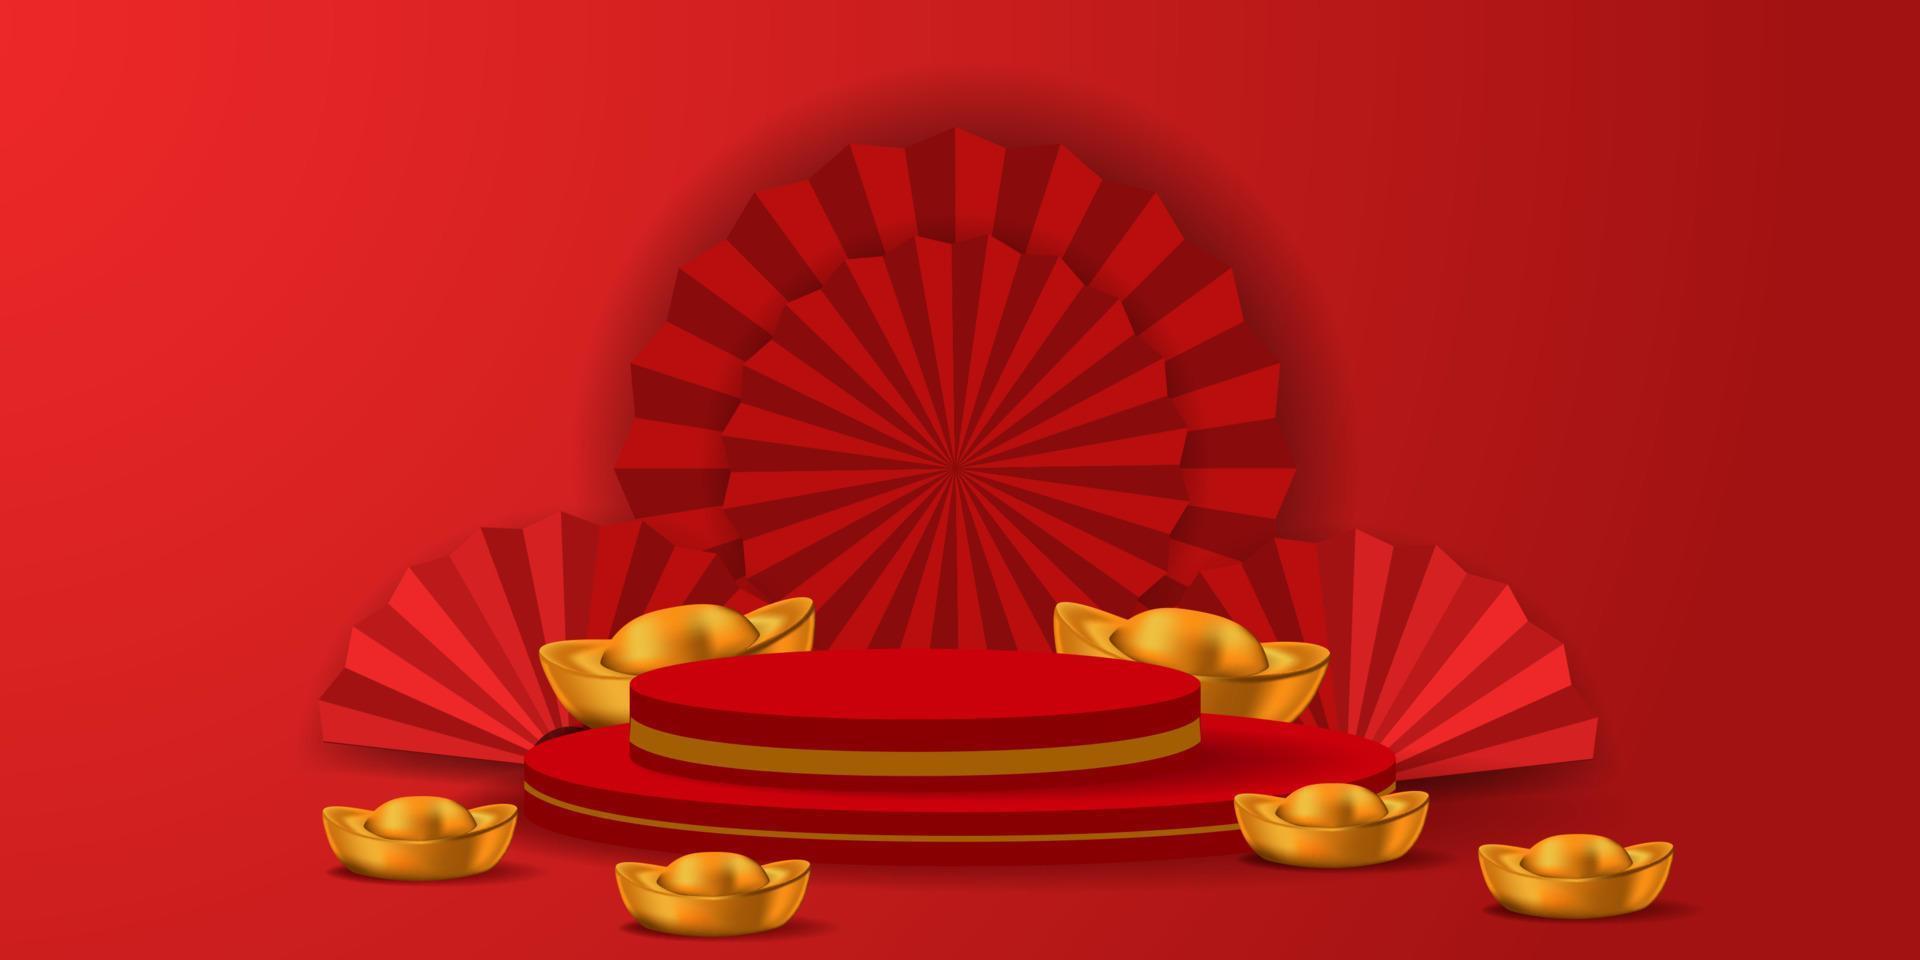 rode hangende 3d lantaarn traditioneel Aziatisch decor. decoraties voor het chinees nieuwjaar. chinese lantaarn festival poster, spandoek, wenskaart vector